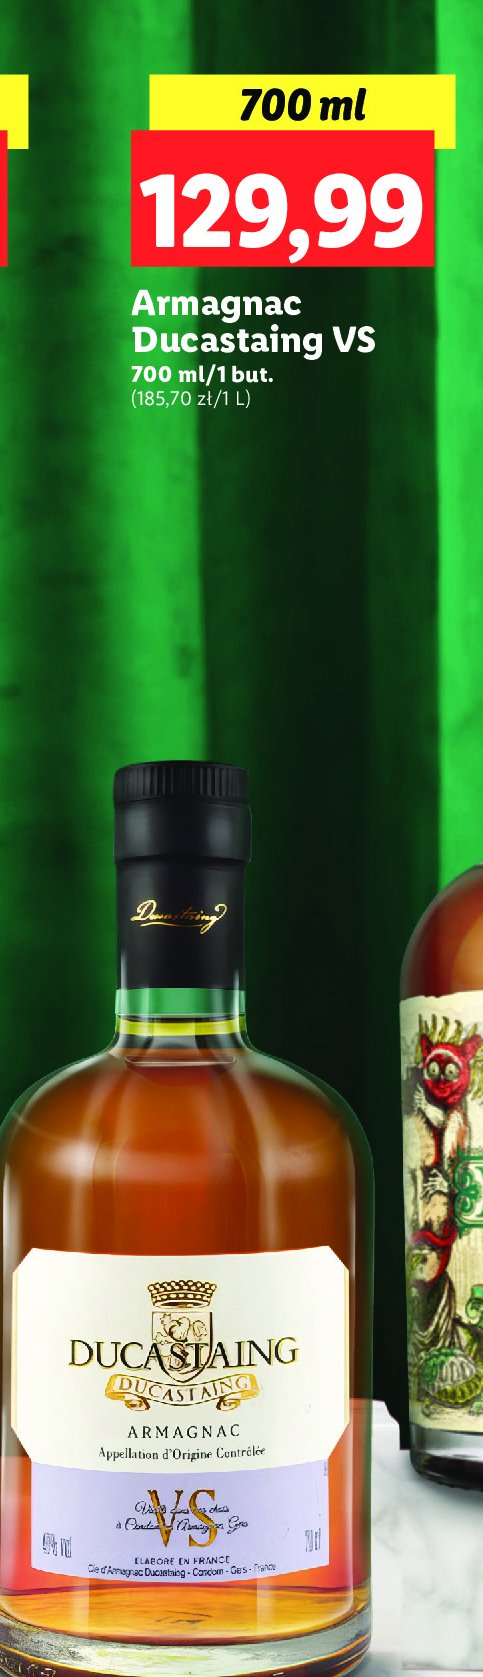 Brandy Armagnac ducastaing vs promocja